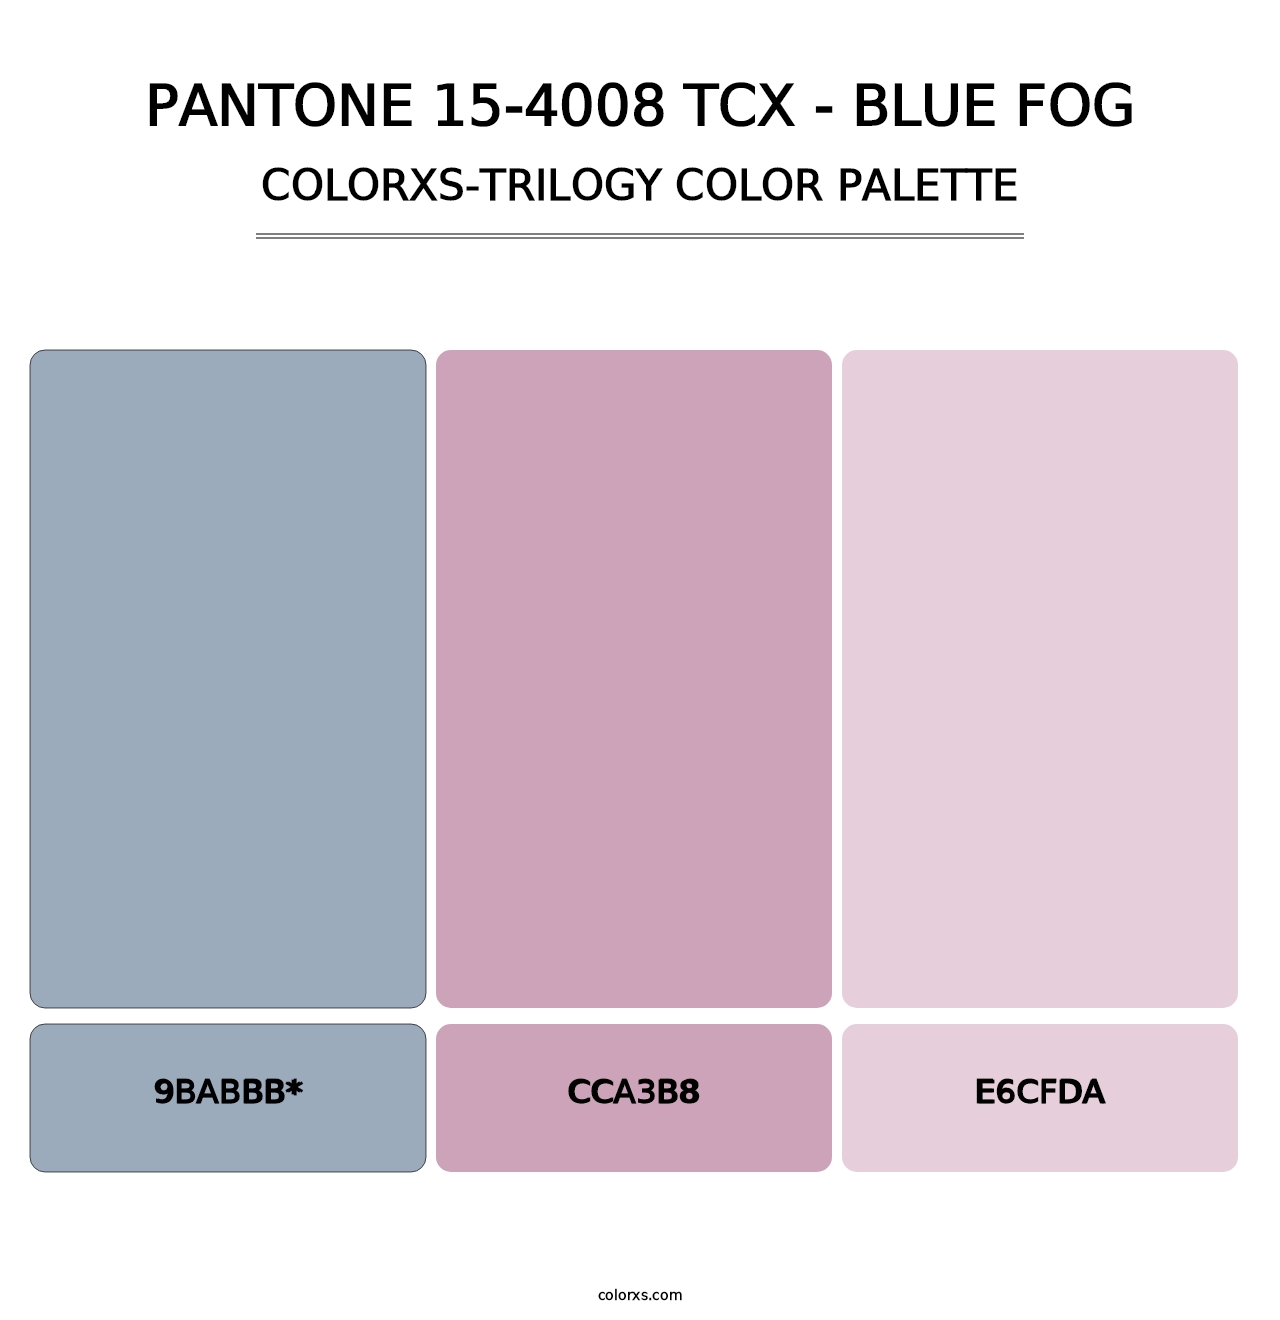 PANTONE 15-4008 TCX - Blue Fog - Colorxs Trilogy Palette